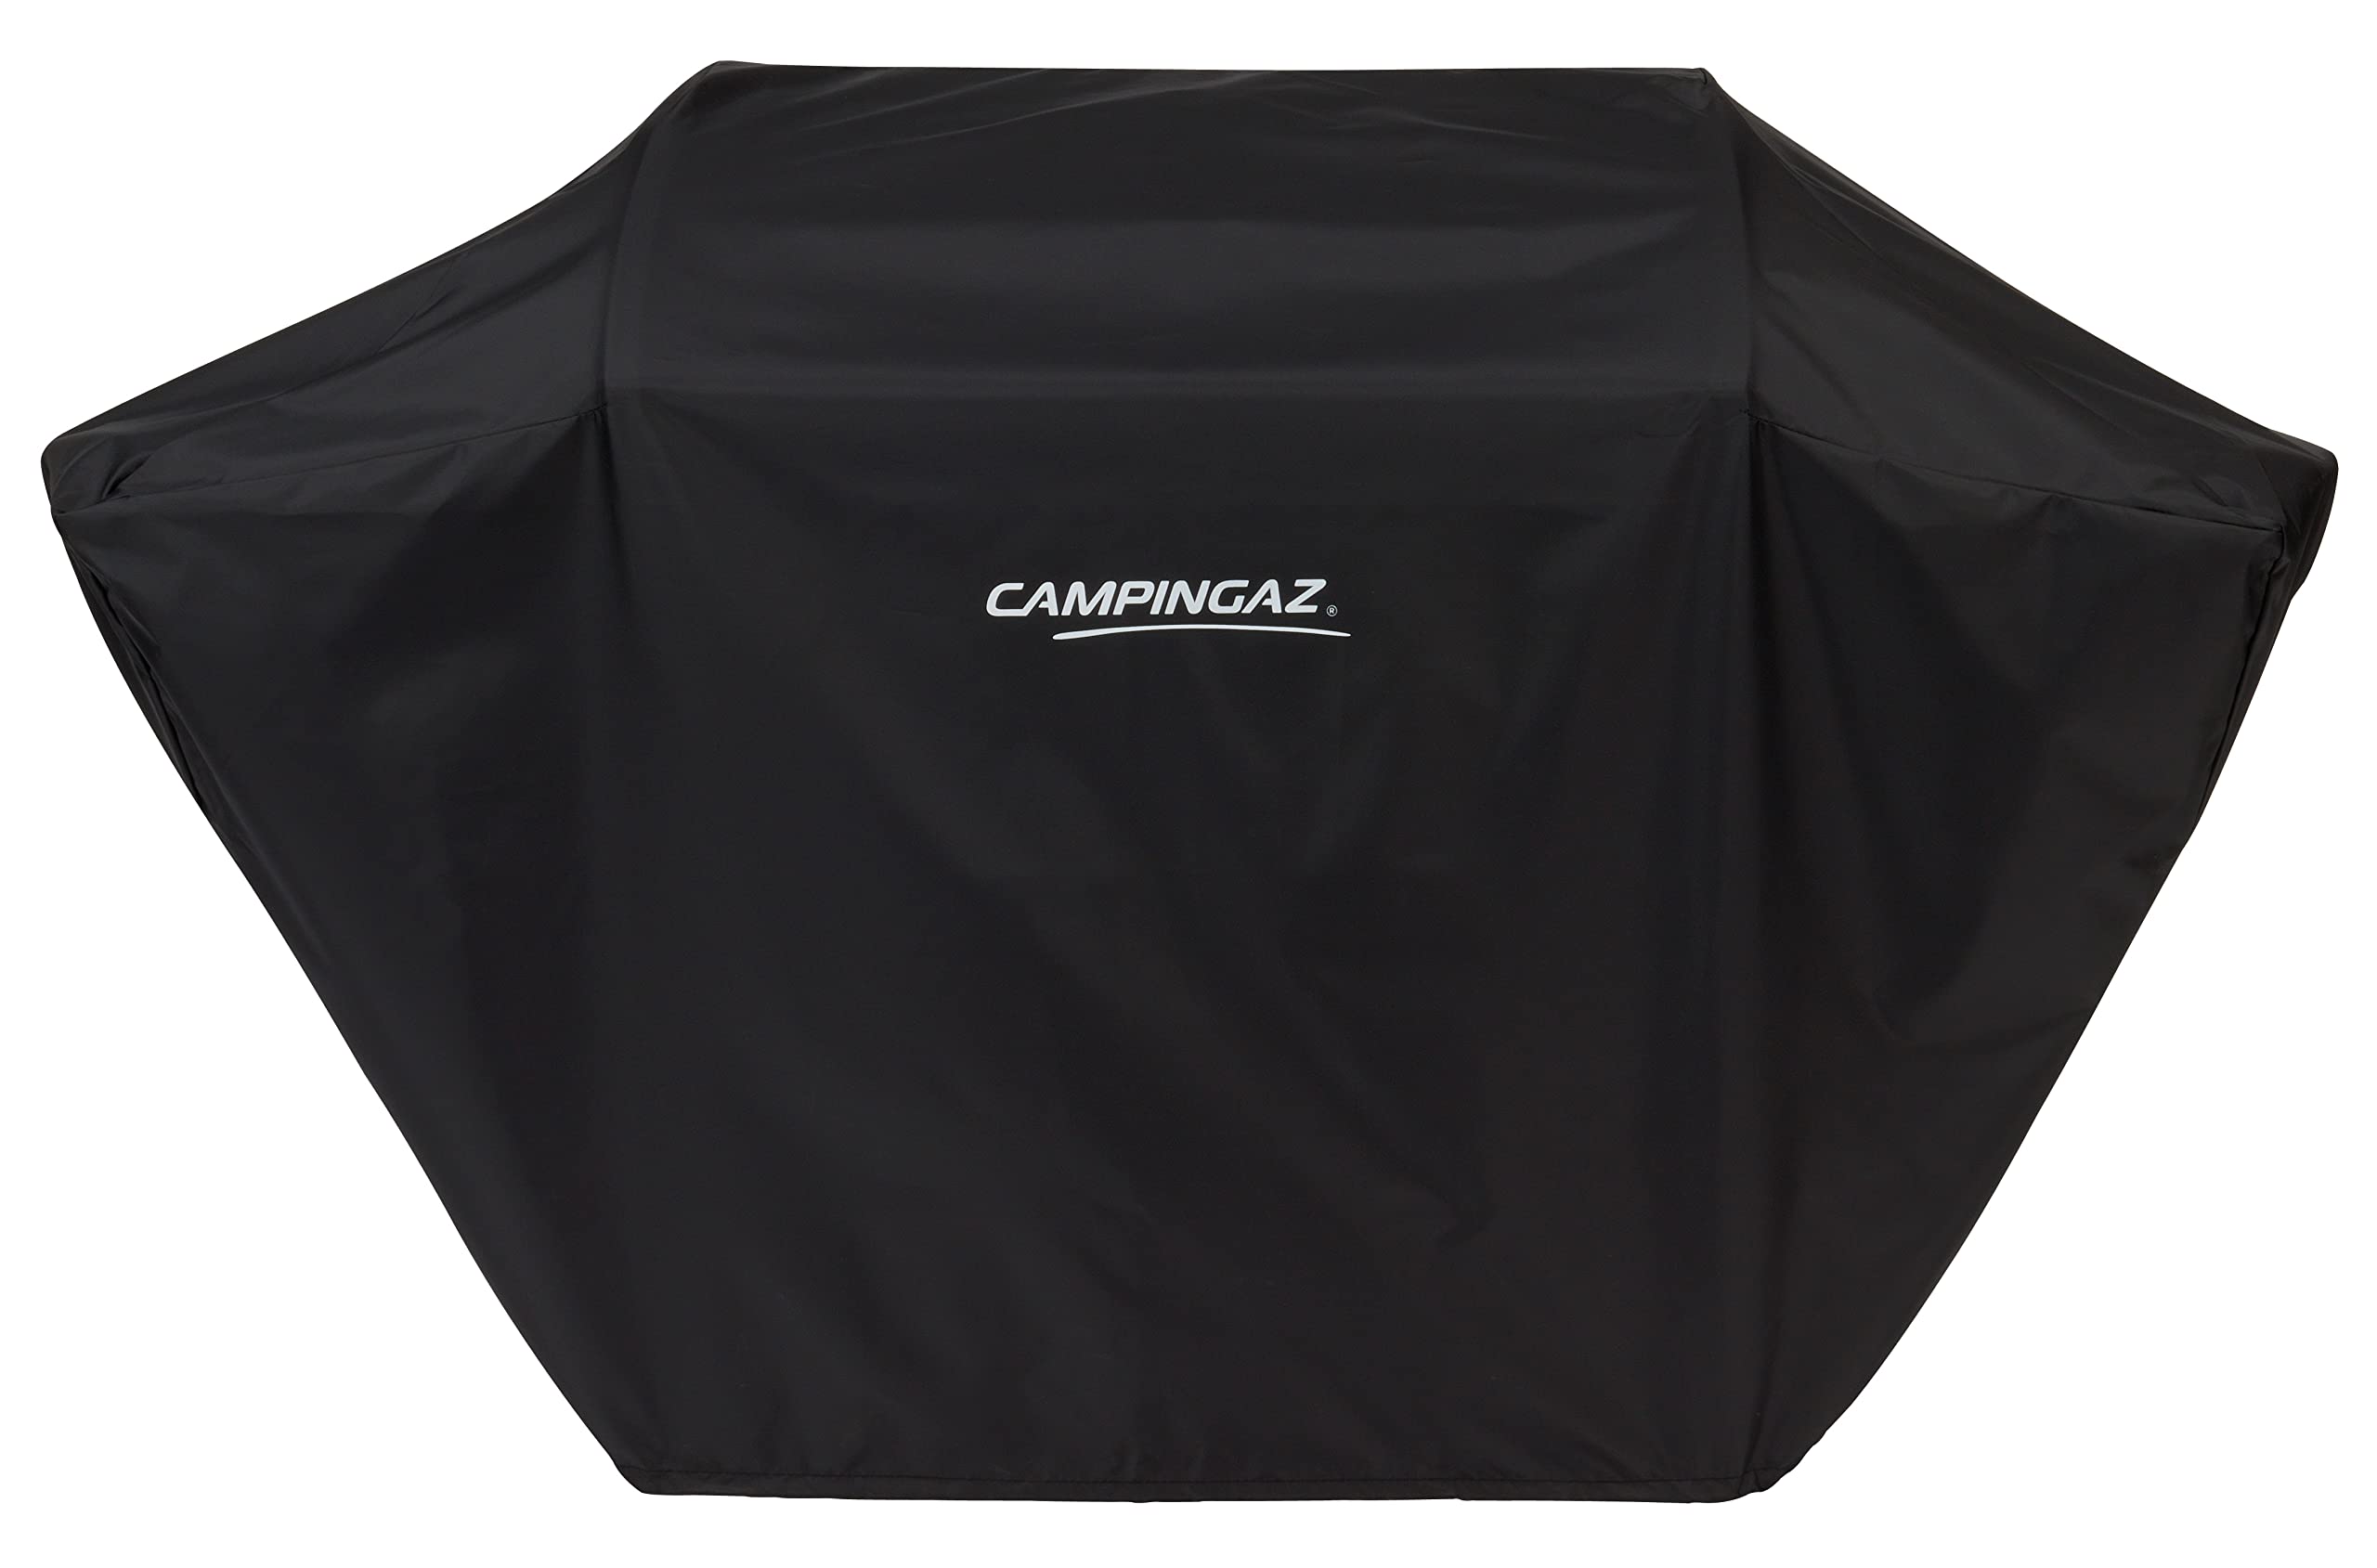 Campingaz Classic M BBQ-Abdeckung mit PU-Beschichtung, wasserdicht, wetterfest, stabile Befestigung; für Modelle 3 Series Select & 2 Series RBS; schützt vor Sonne und Regen